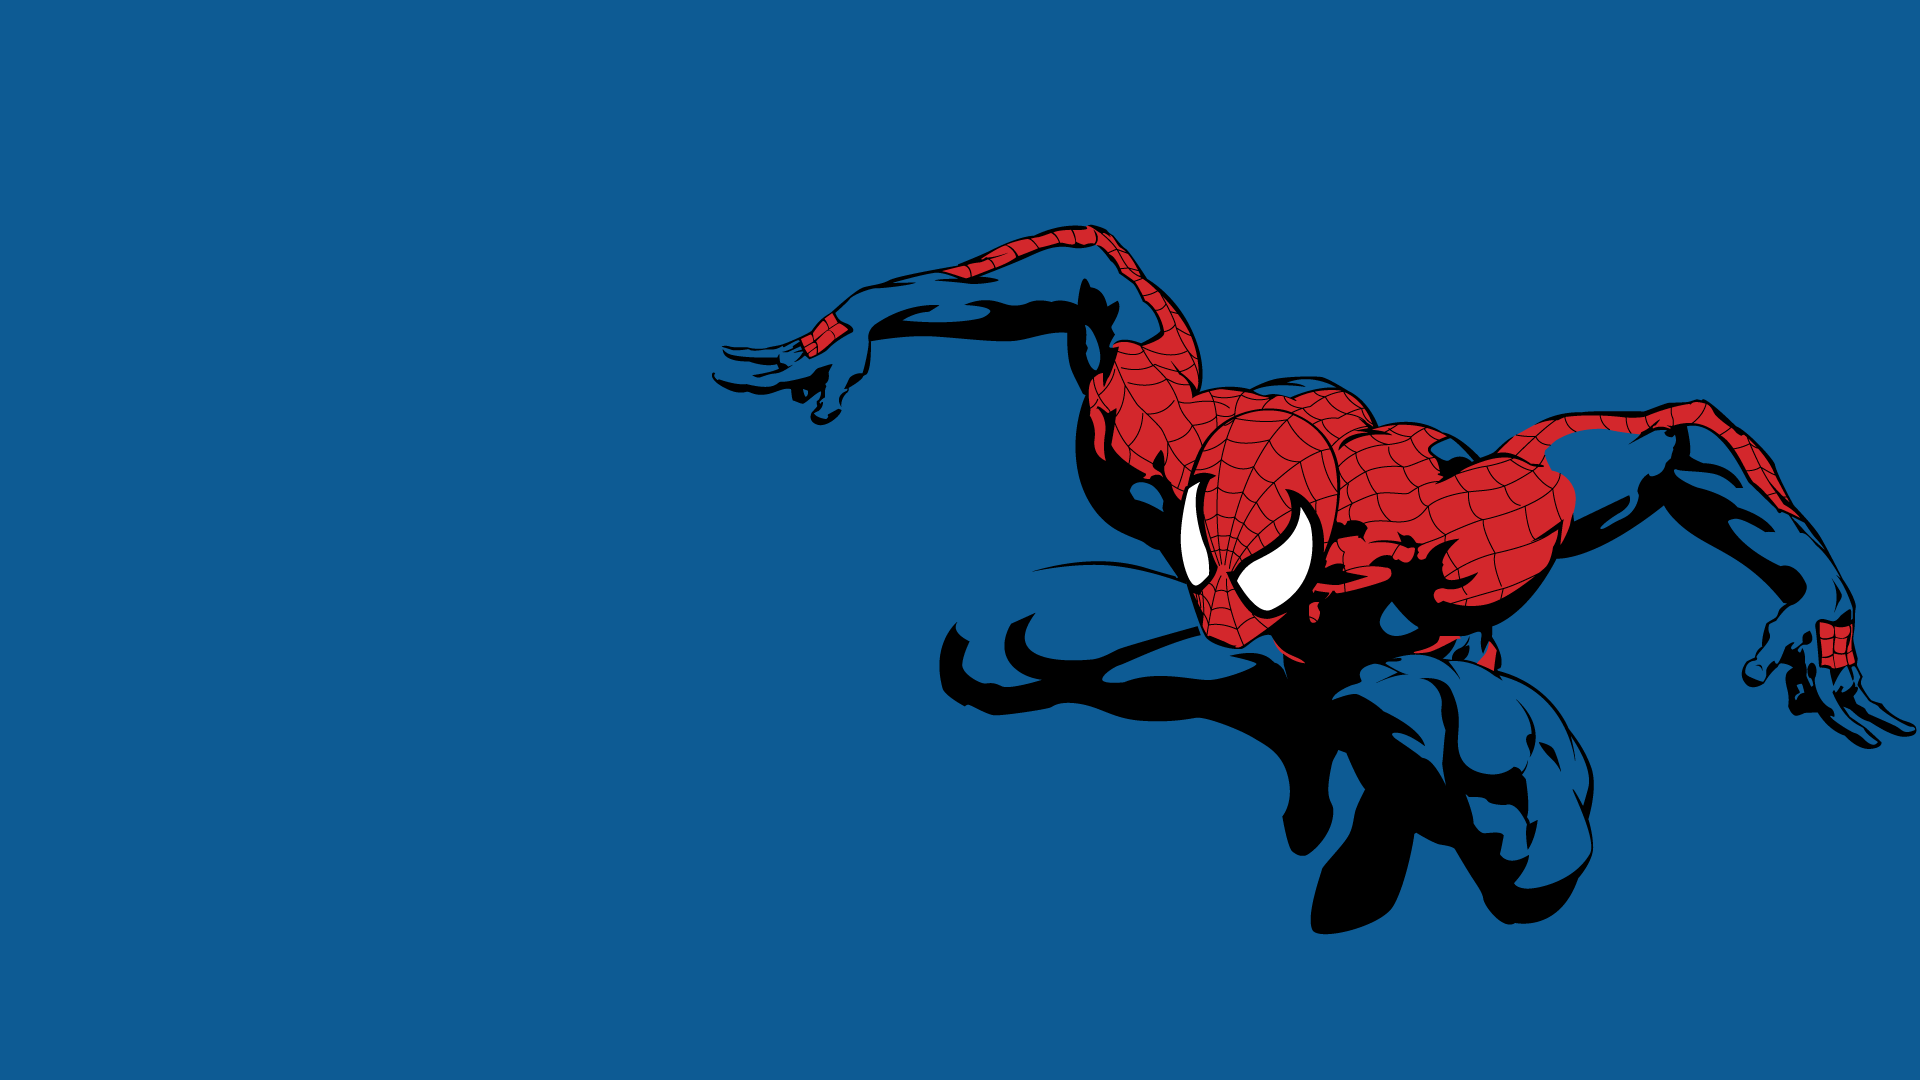 مرد عنکبوتی (spider man)